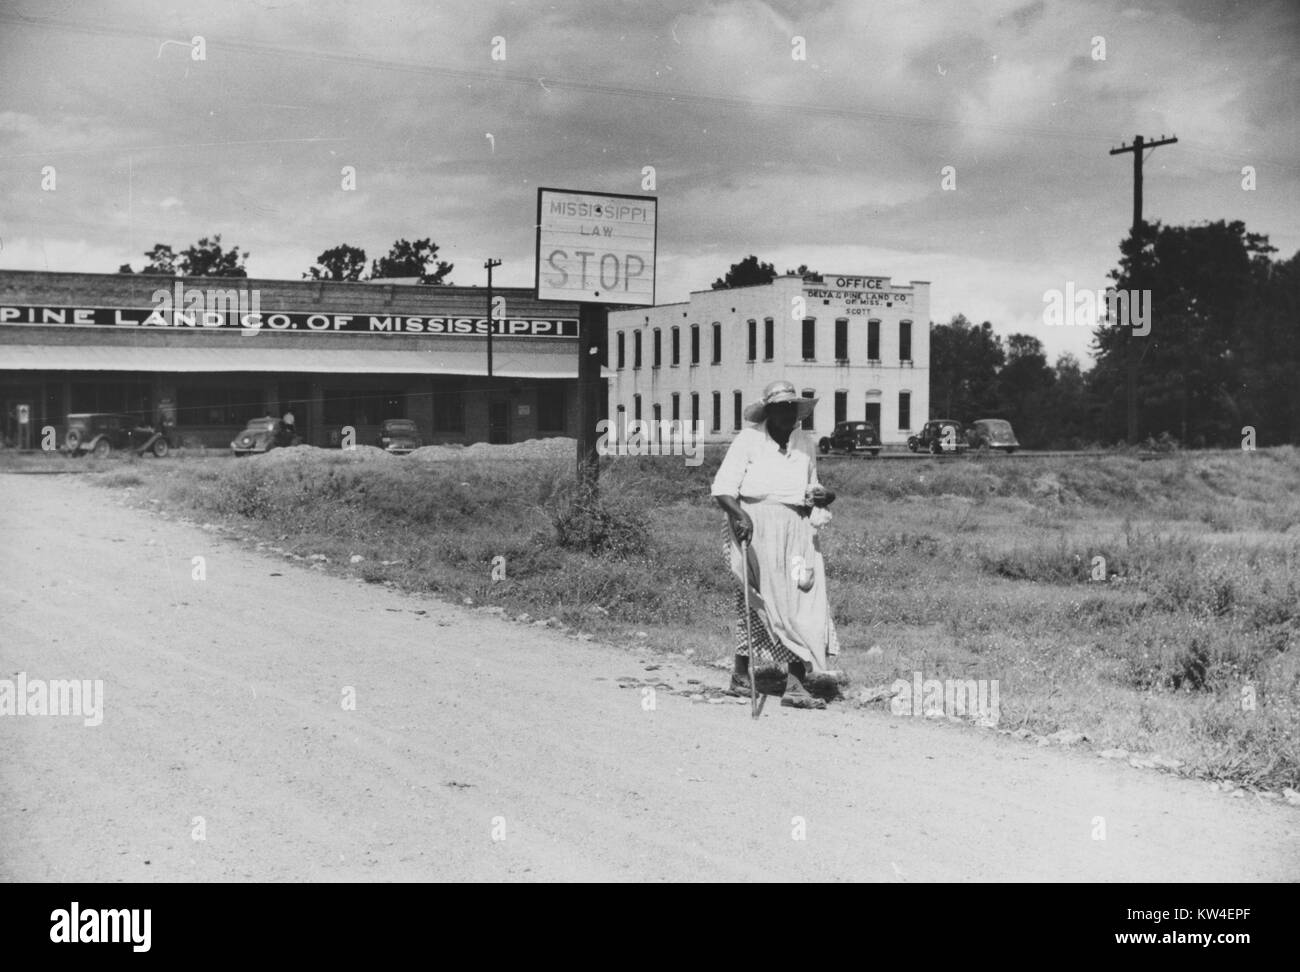 Una donna cammina lungo una strada sterrata nei pressi di negozi, uffici, e clinica su una piantagione di cotone del Delta Società di pino di Scott, Mississippi, ottobre 1939. Foto Stock